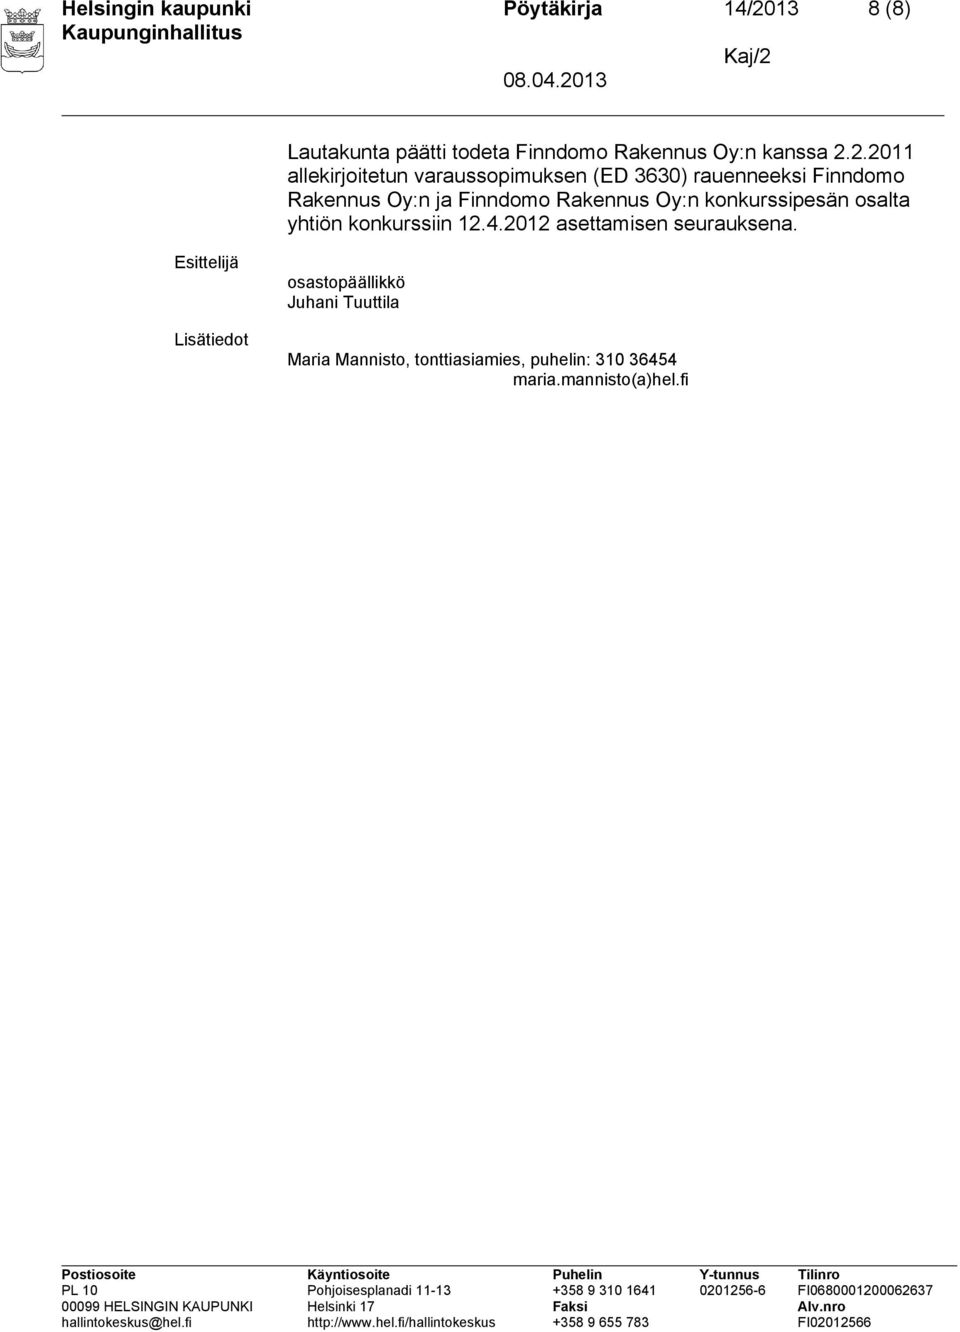 2.2011 allekirjoitetun varaussopimuksen (ED 3630) rauenneeksi Finndomo Rakennus Oy:n ja Finndomo